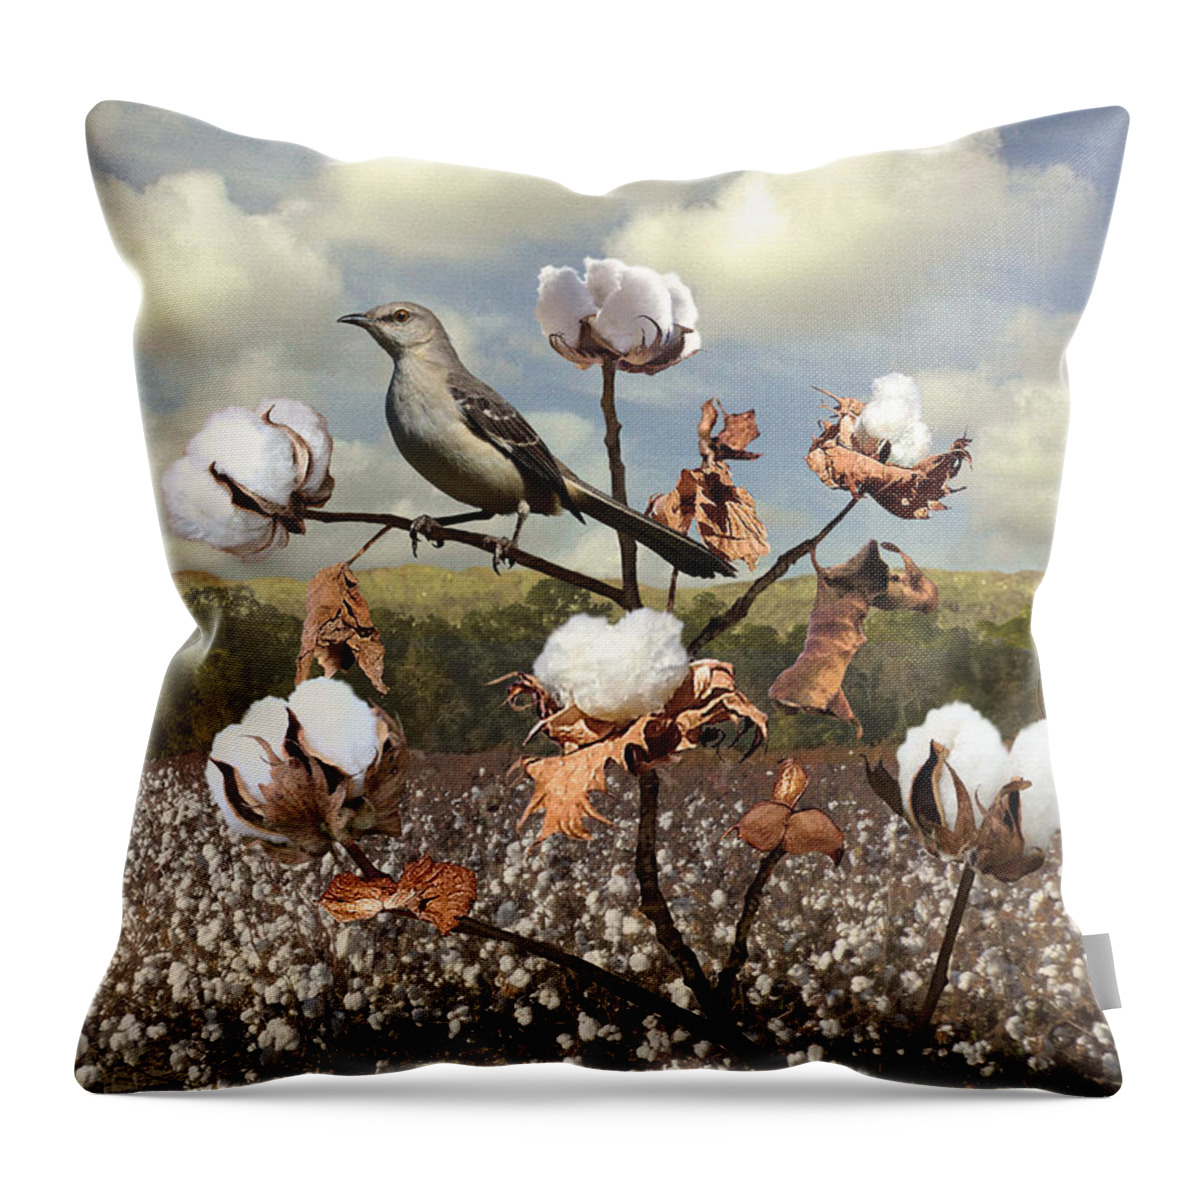 Bird Throw Pillow featuring the digital art Secret Of The Mockingbird by M Spadecaller